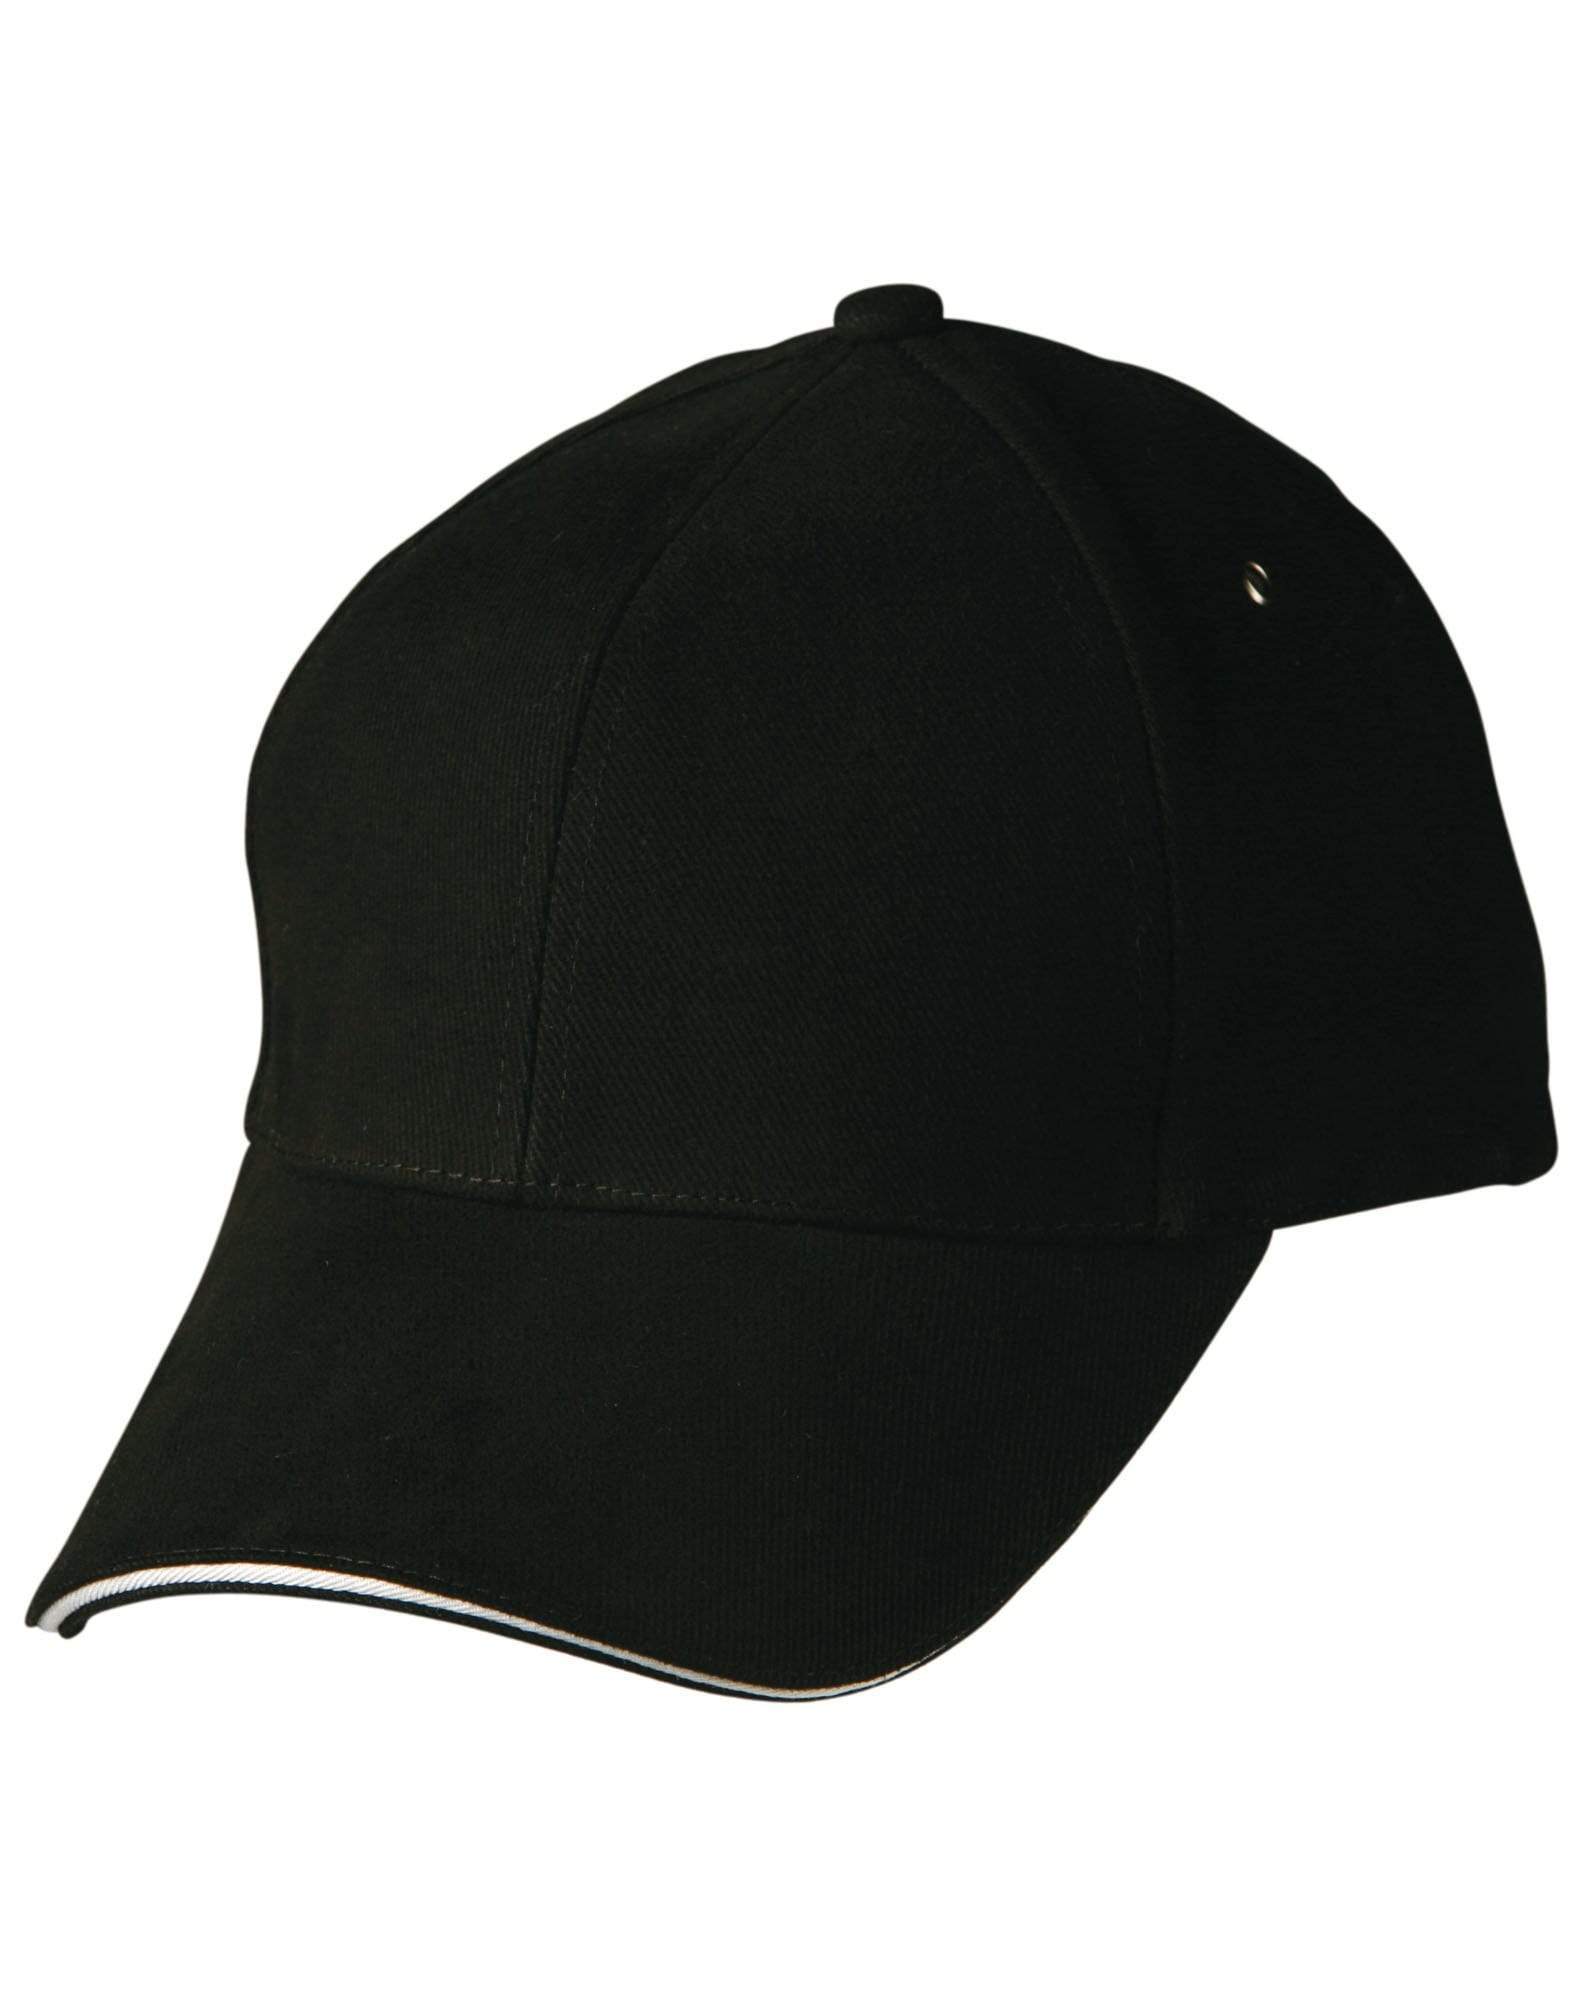 Sandwich Peak Cap Ch18 Active Wear Winning Spirit Black/White One size fits most 